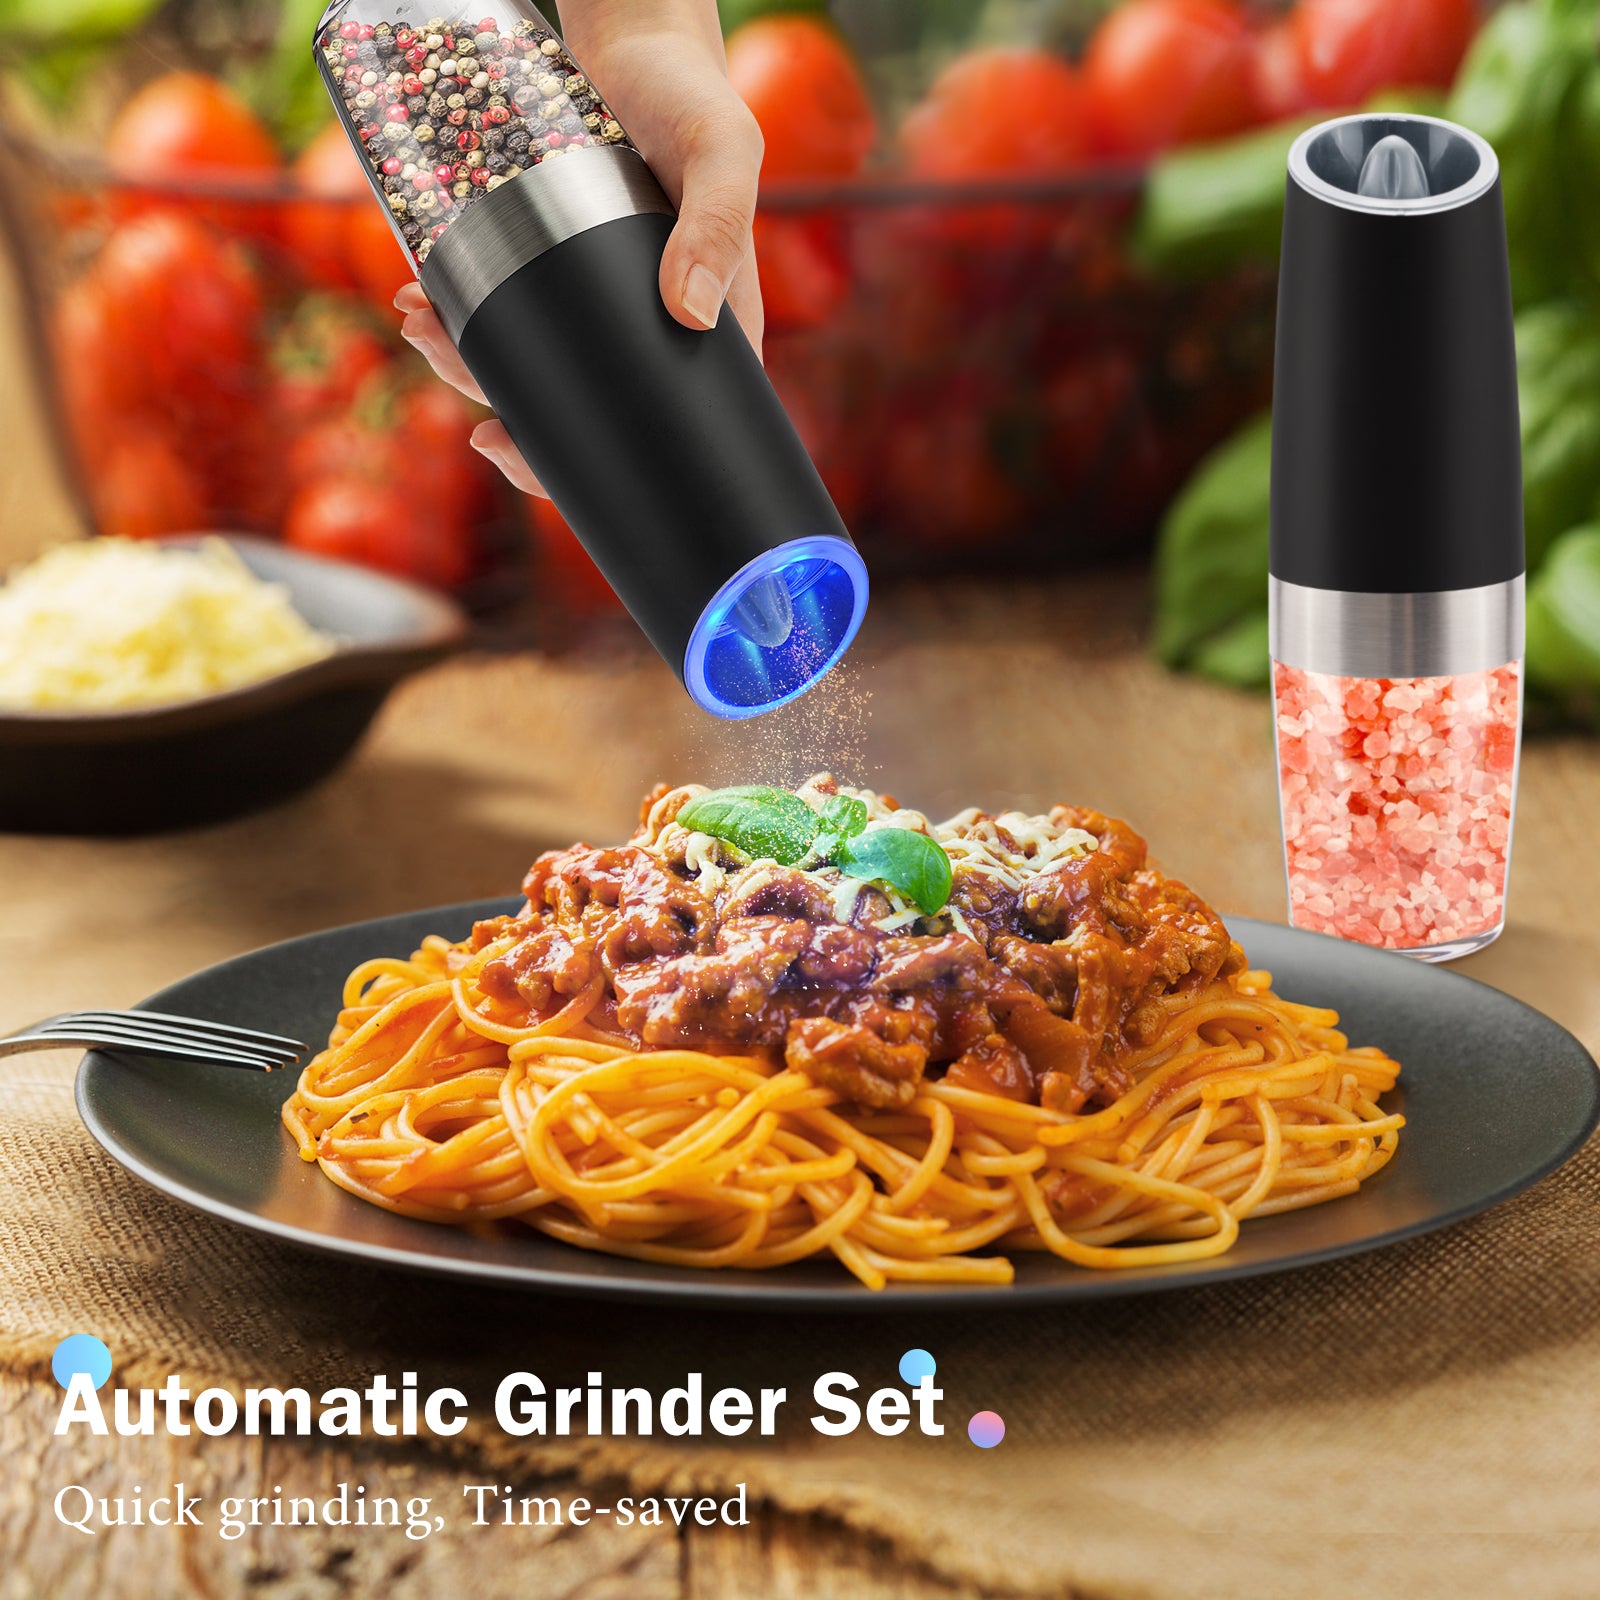  Gravity Electric Pepper and Salt Grinder Set